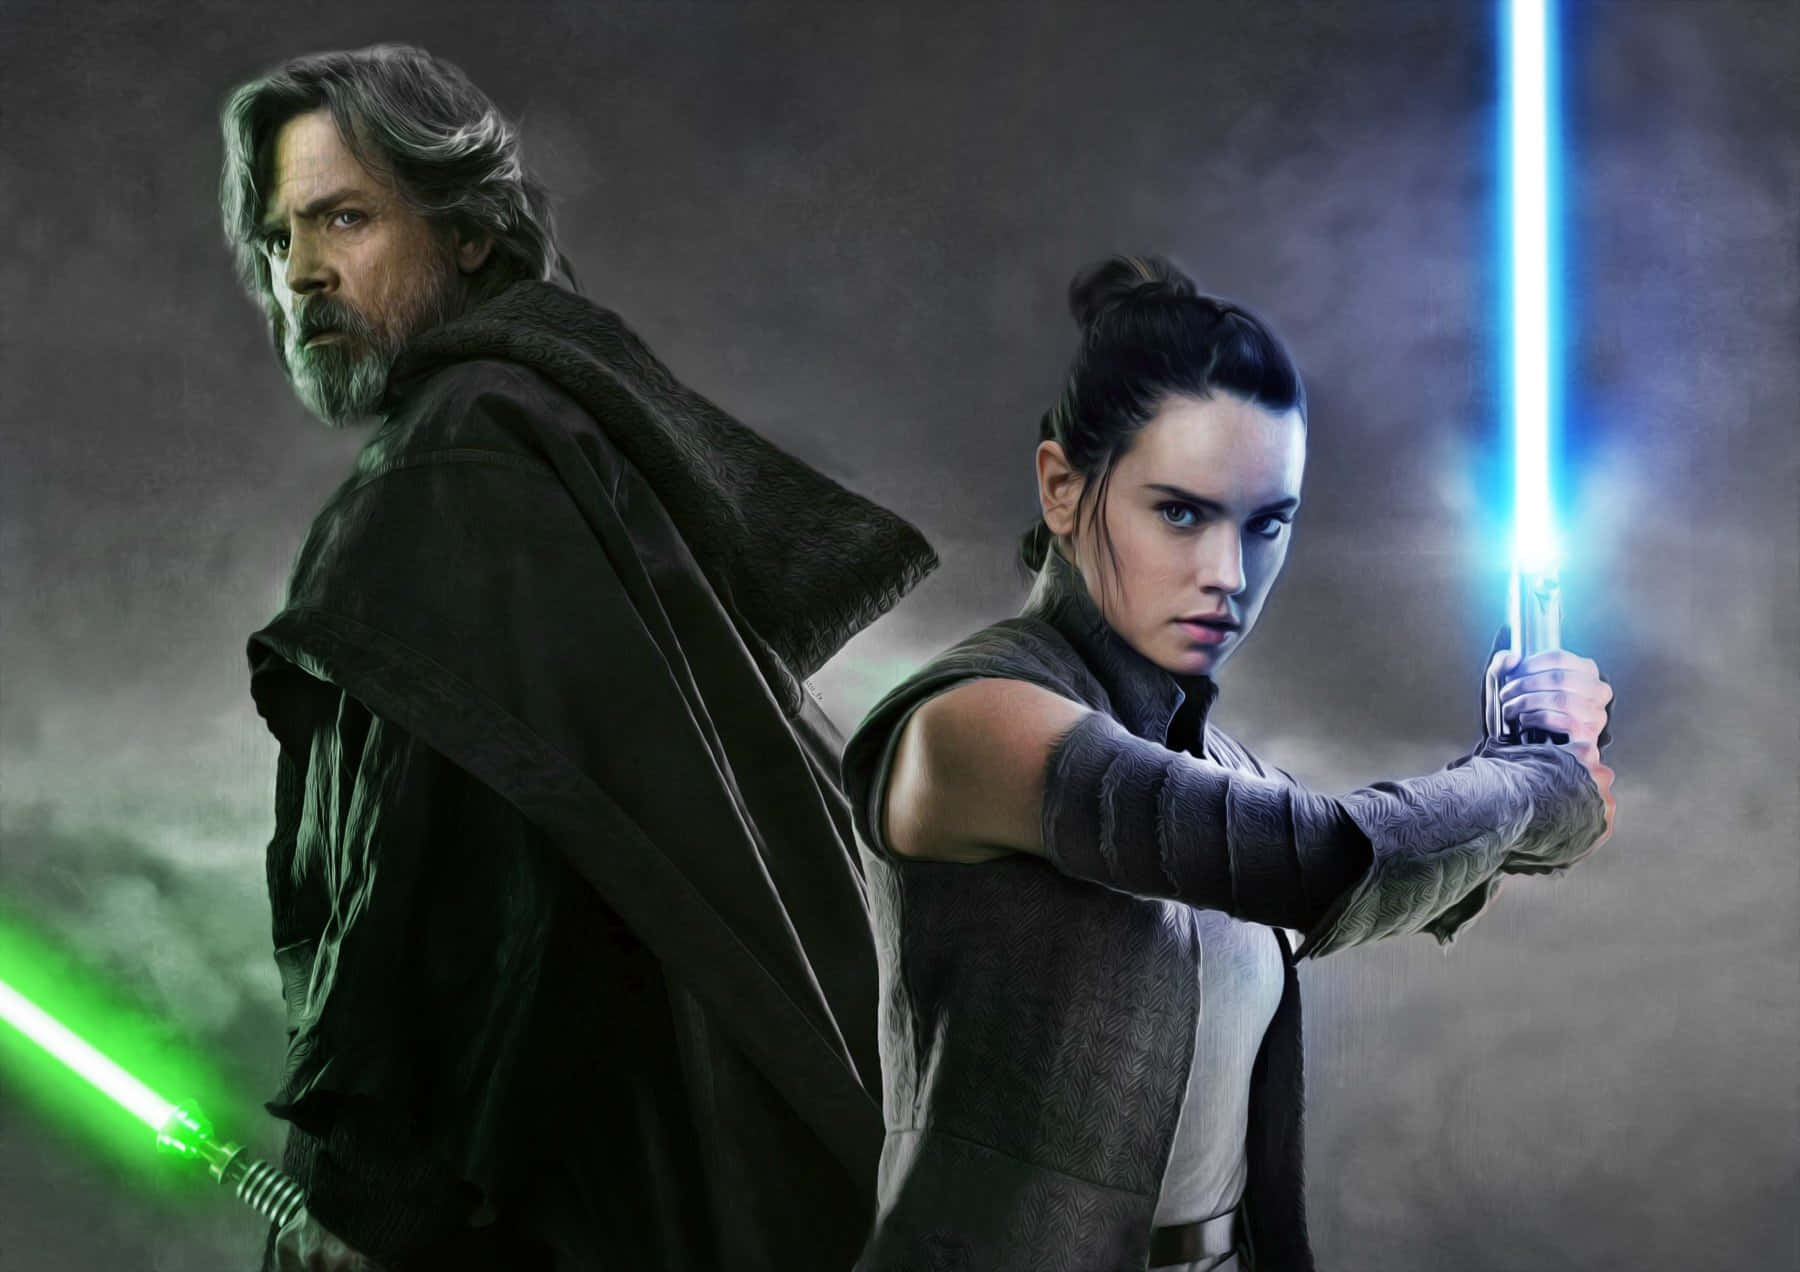 Bildvon Rey Und Luke Skywalker Aus Star Wars